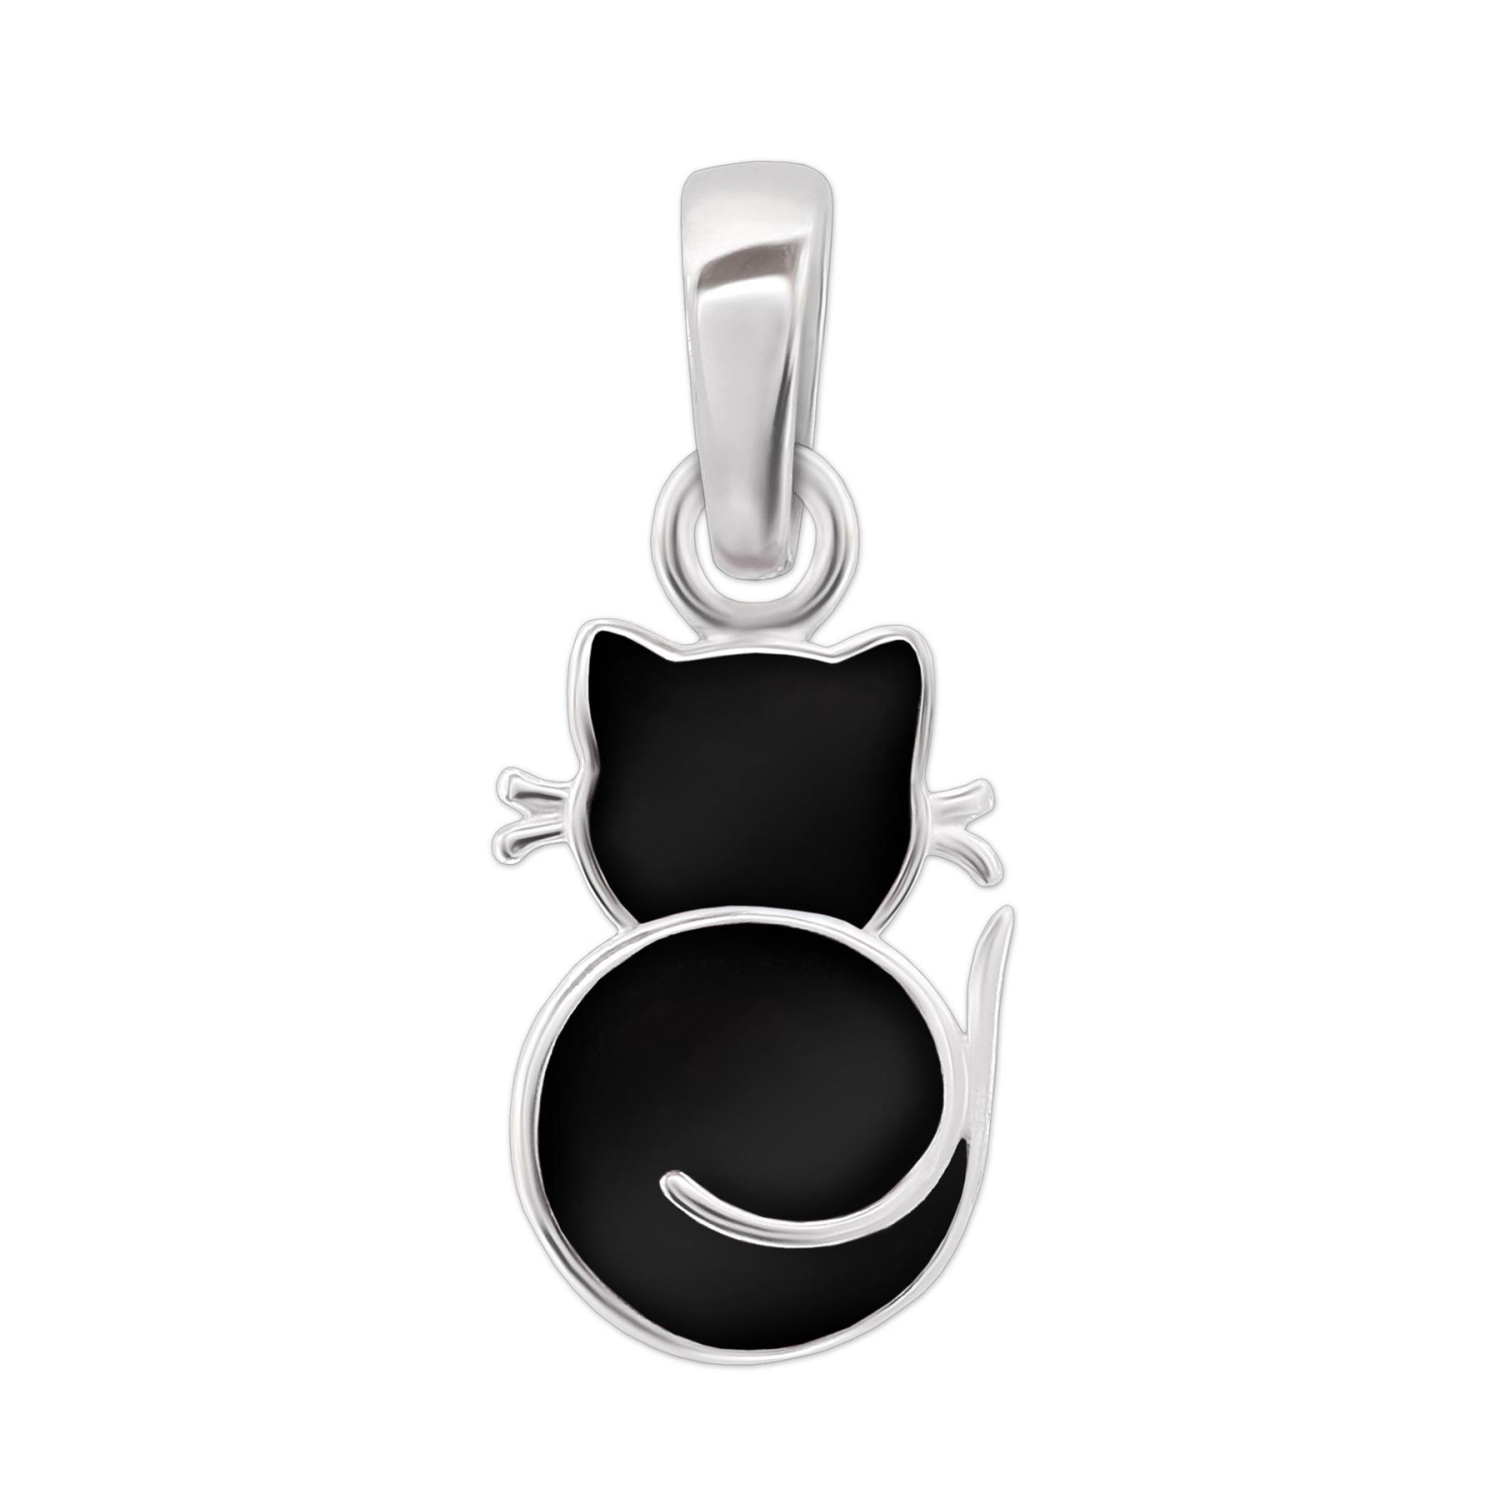 Anhänger kleine Katze 10mm schwarzer Kater gekringelt schlicht glänzend Echt Silber 925